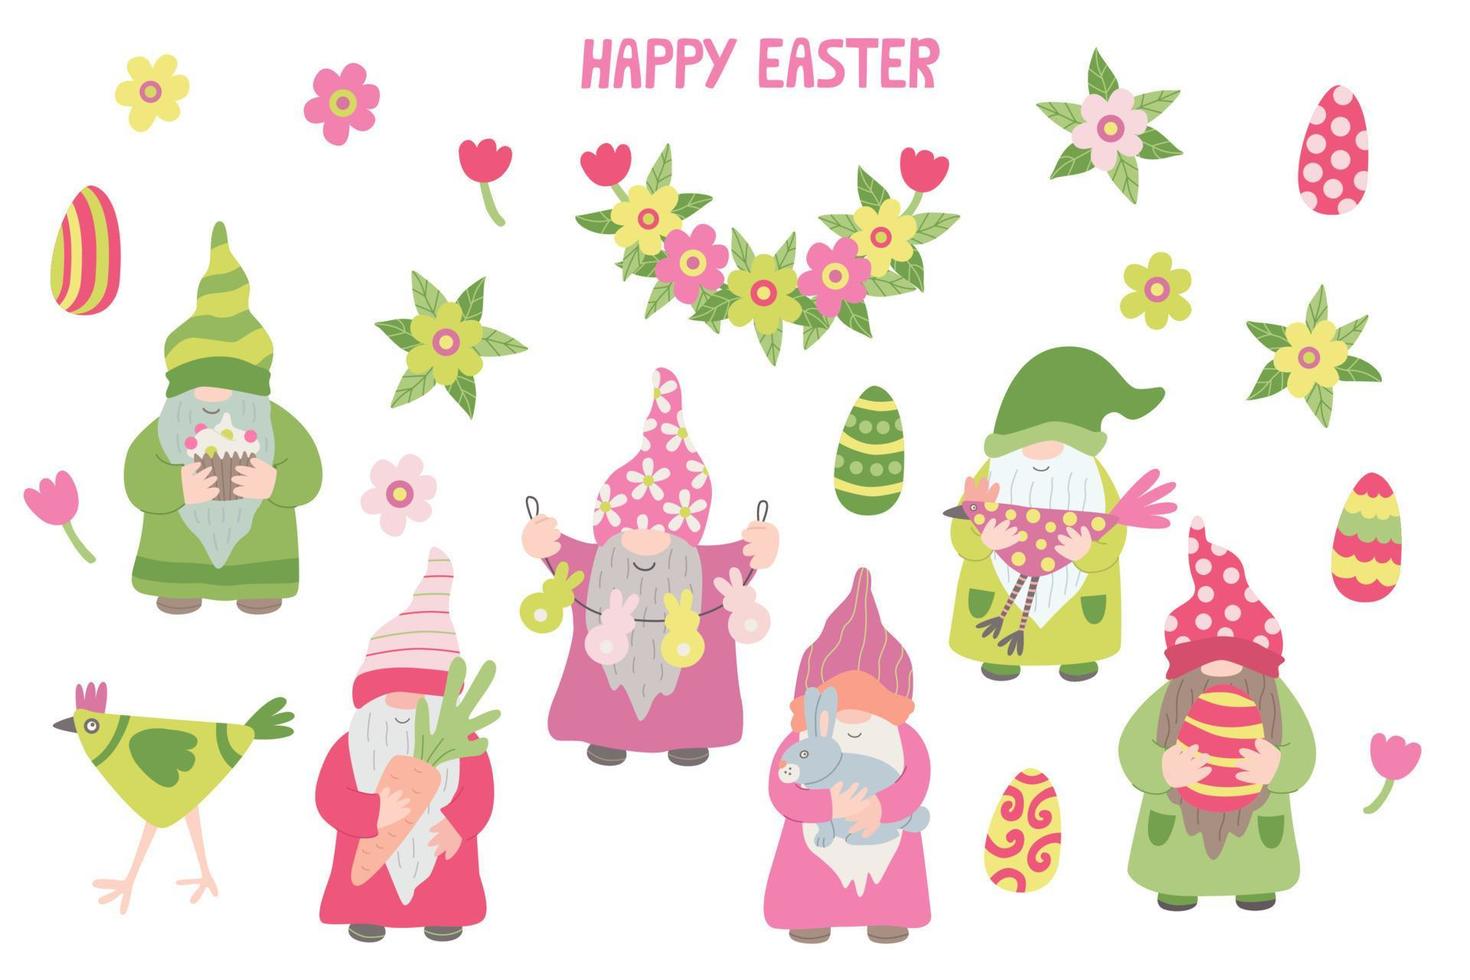 ambientado con lindos animales. gallinas divertidas, conejos o conejitos y flores de margarita. Ilustración de vector plano dibujado a mano de primavera. genial para el diseño de Pascua.